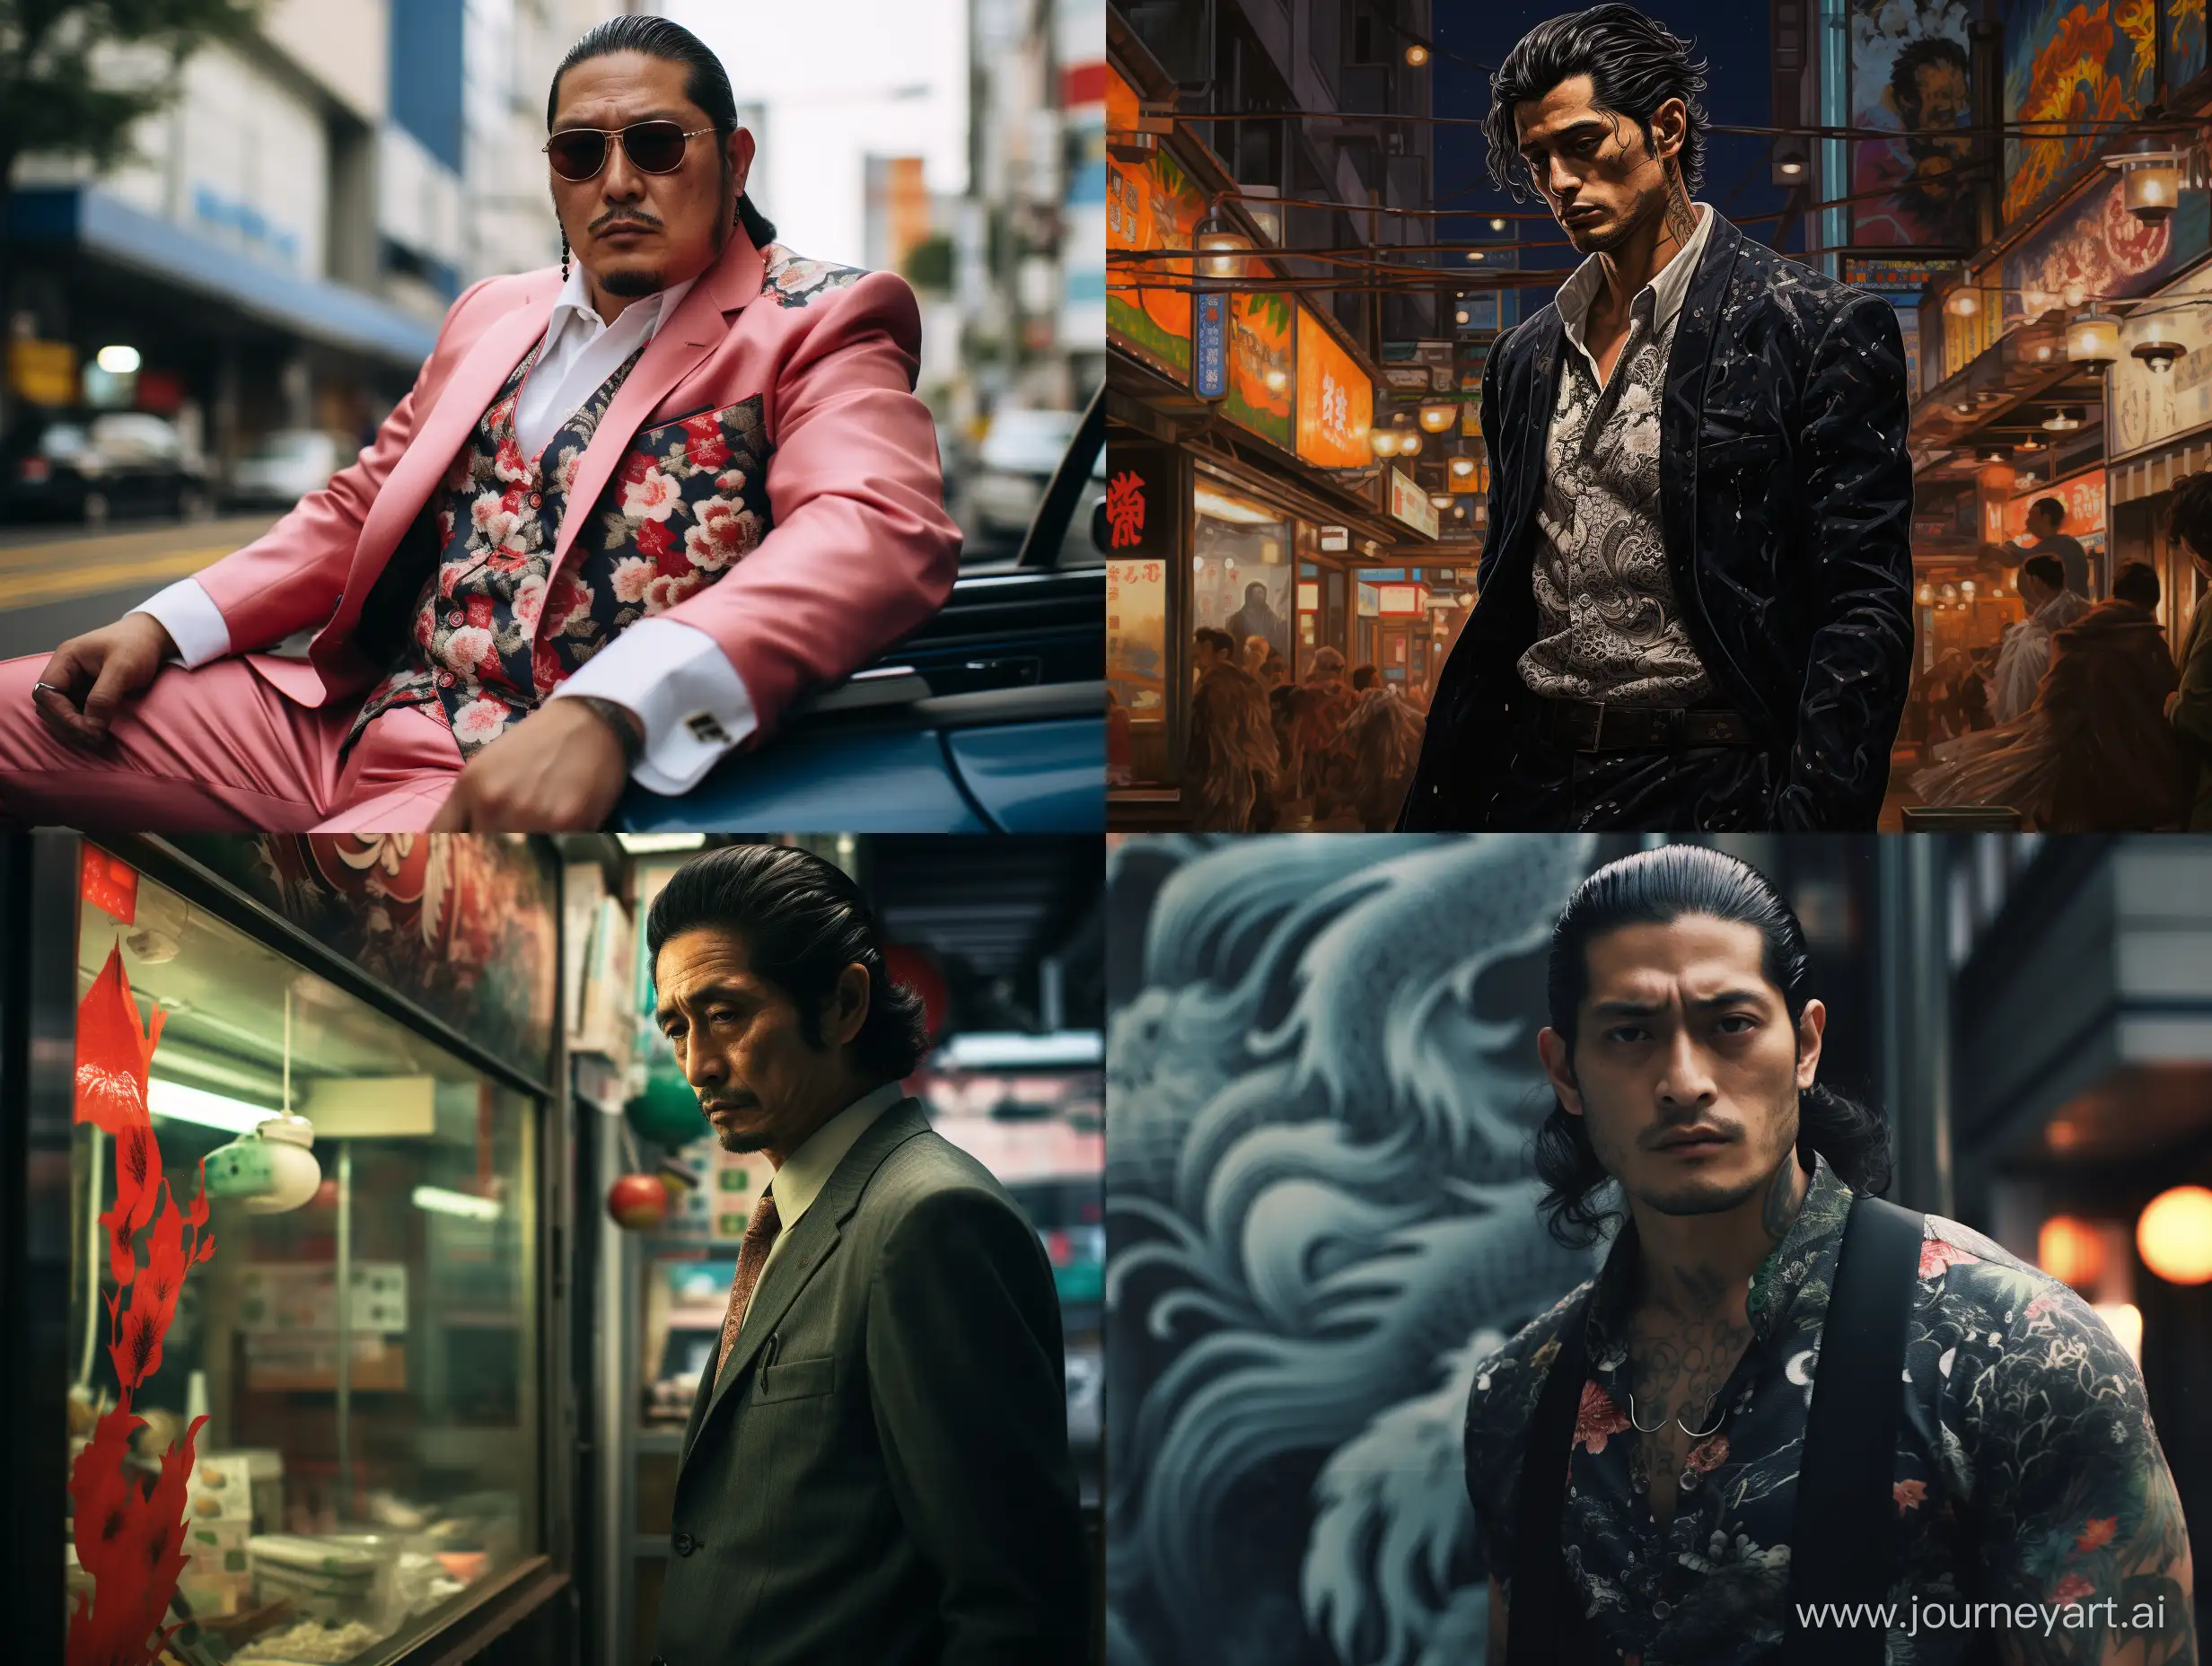 Yakuza-Dominates-Modern-Tokyo-Streets-Urban-Crime-Scene-Photo